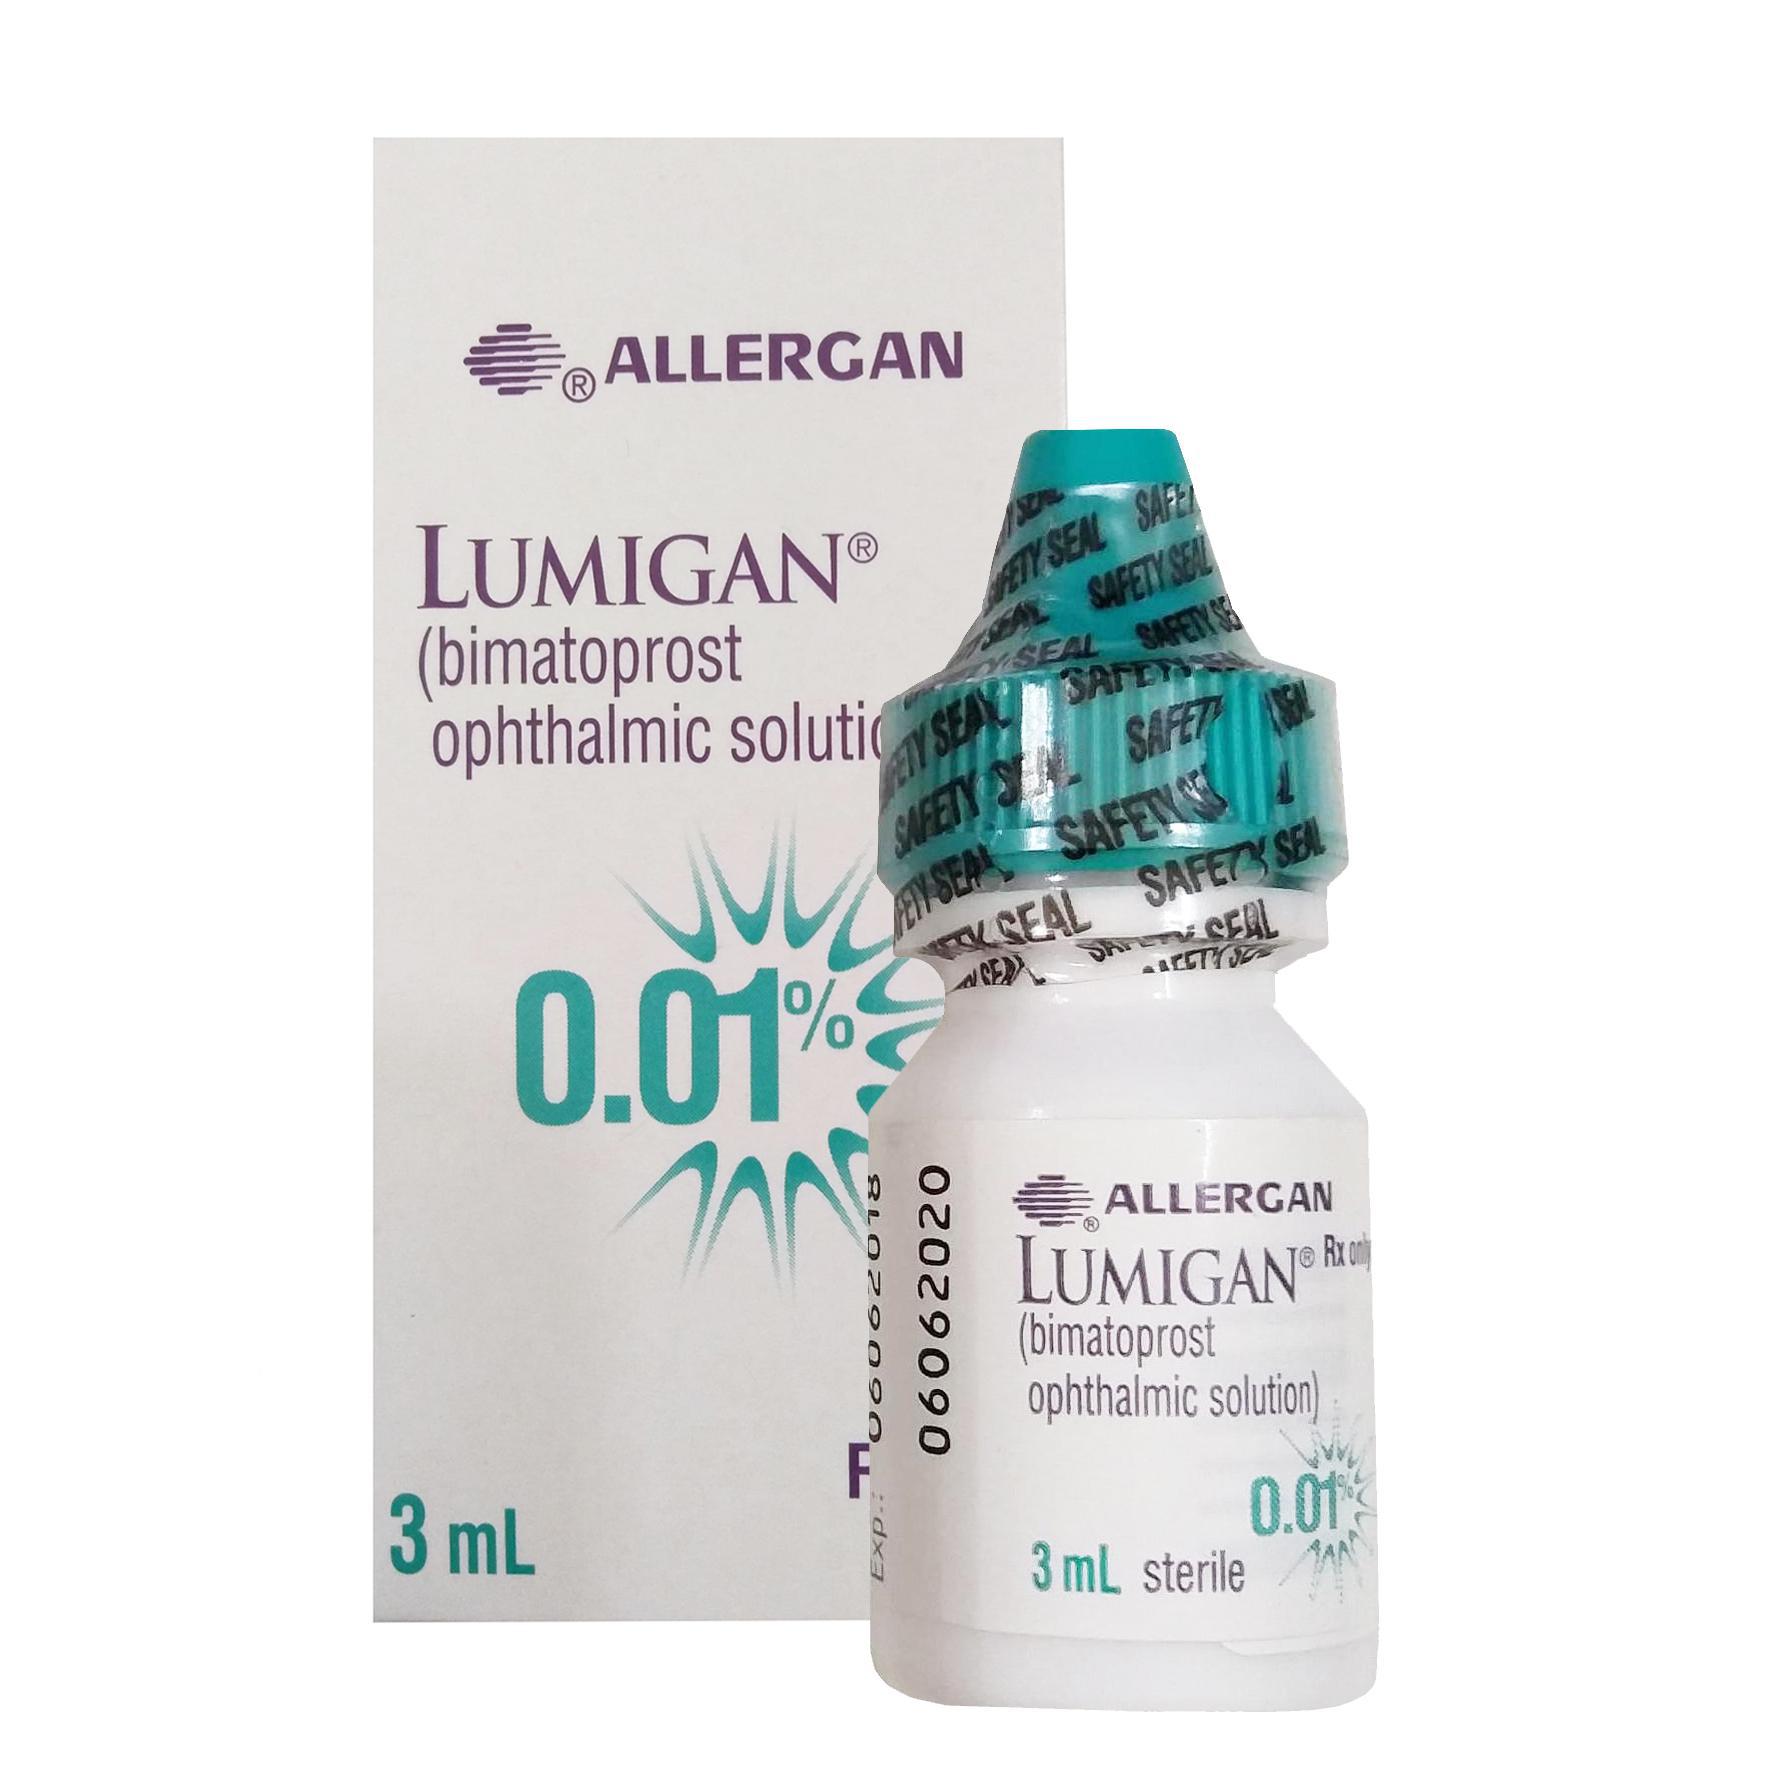 Lumigan eye 0.01% (Bimatoprost) Allergan (C/3ml)